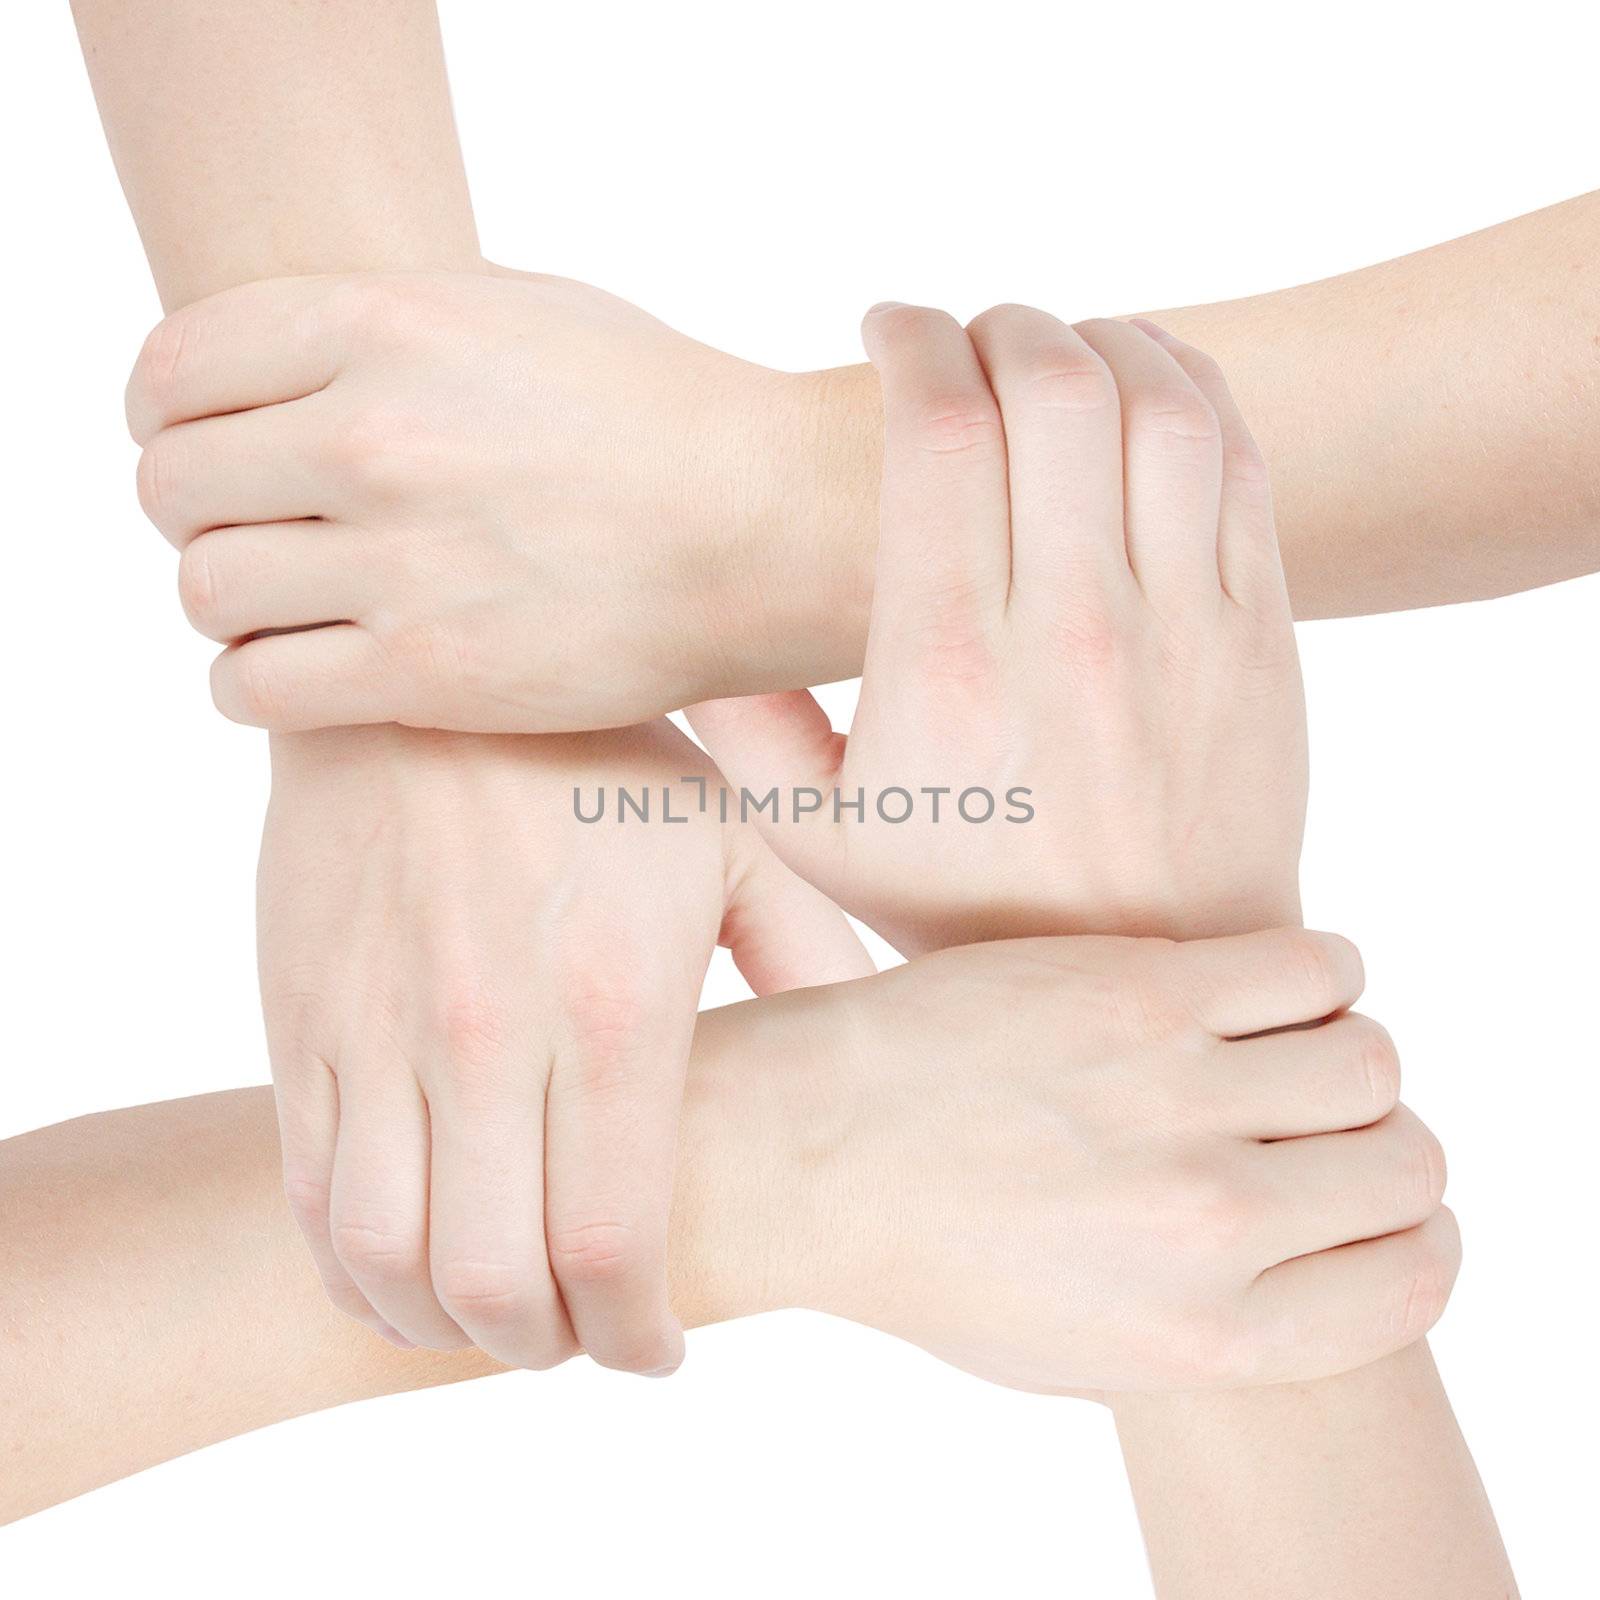 United hands by leeser